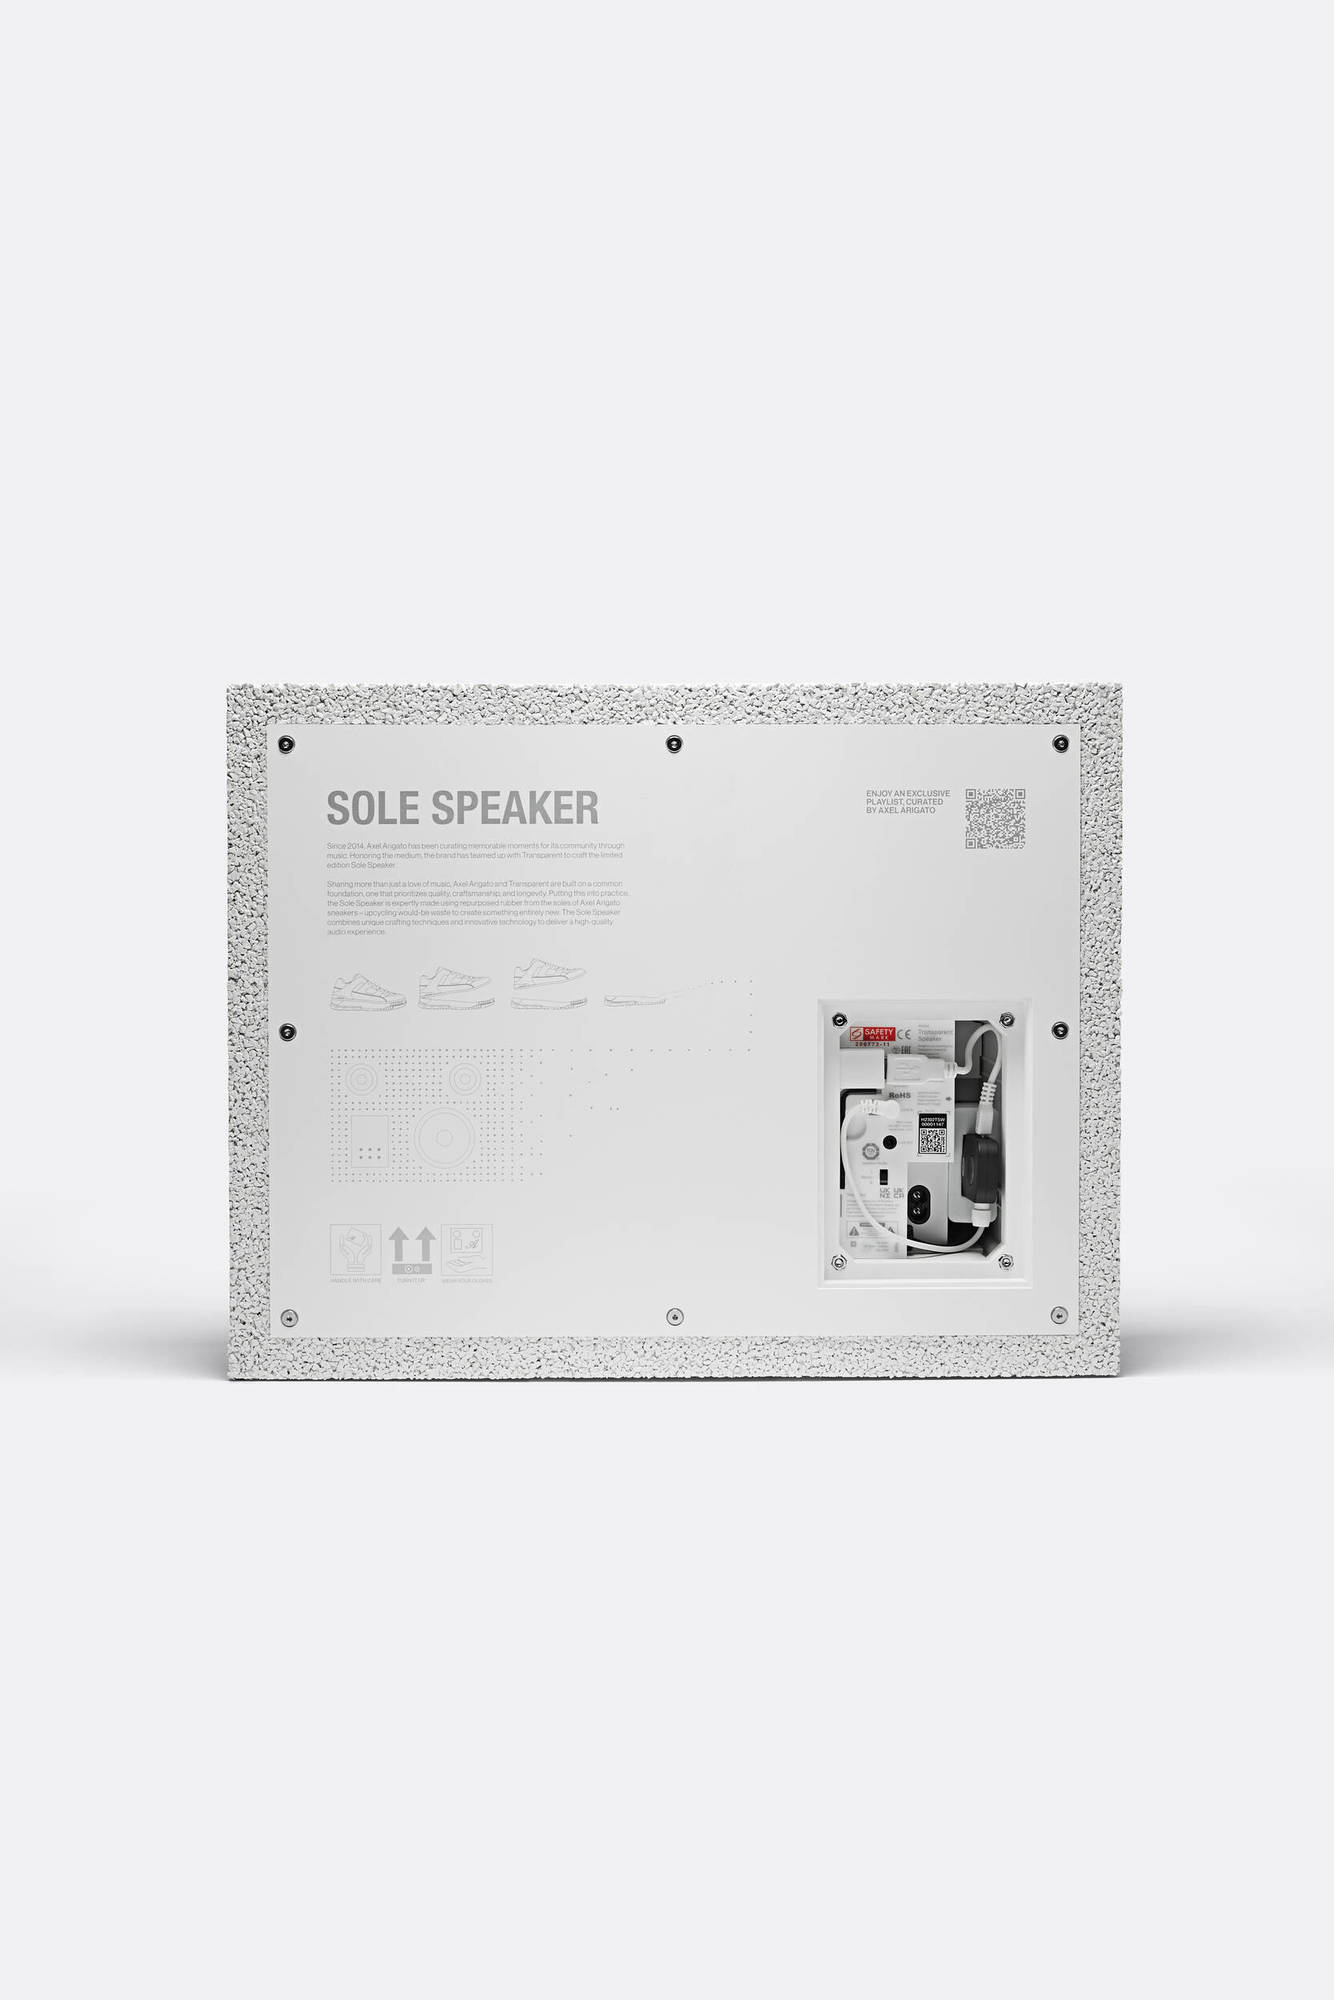 Sole Speaker